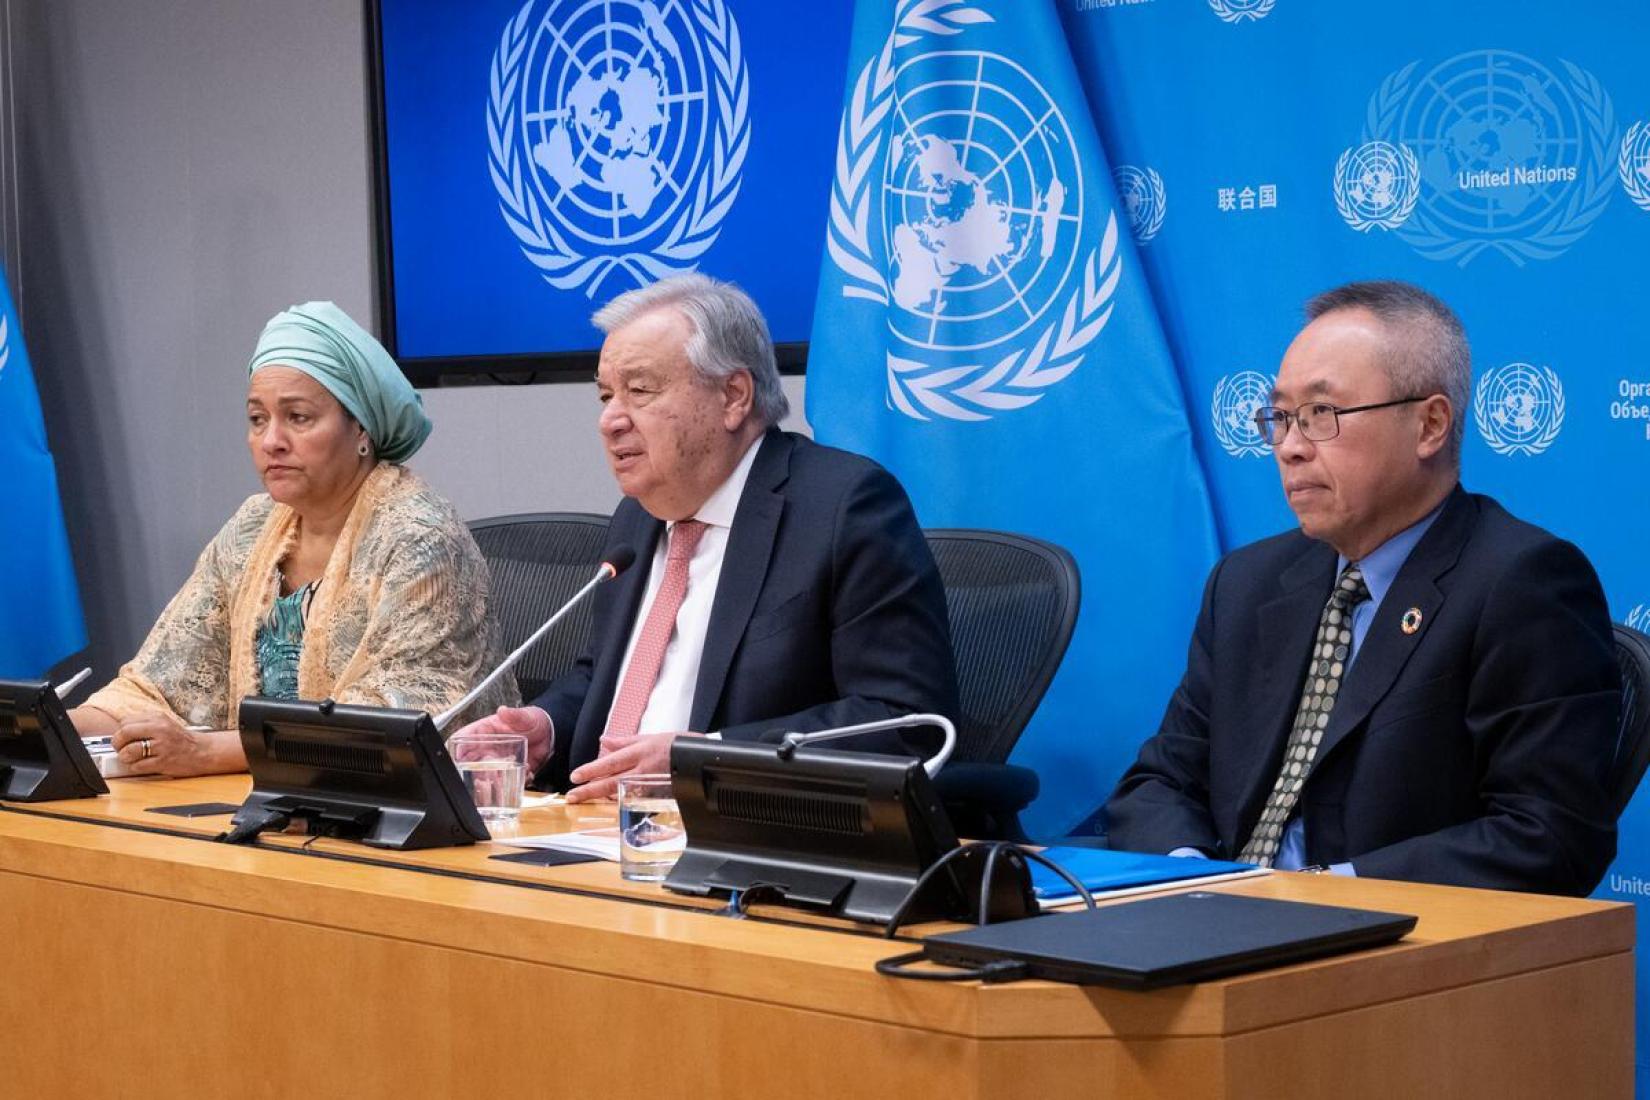 O secretário-geral António Guterres (centro) fala durante a coletiva de imprensa sobre o Relatório dos Objetivos de Desenvolvimento Sustentável 2024. À esquerda a vice-secretaria-geral, Amina Mohammed, e à direita Li Junhua, subsecretário-geral para os Assuntos Econômicos e Sociais do Nações Unidas.